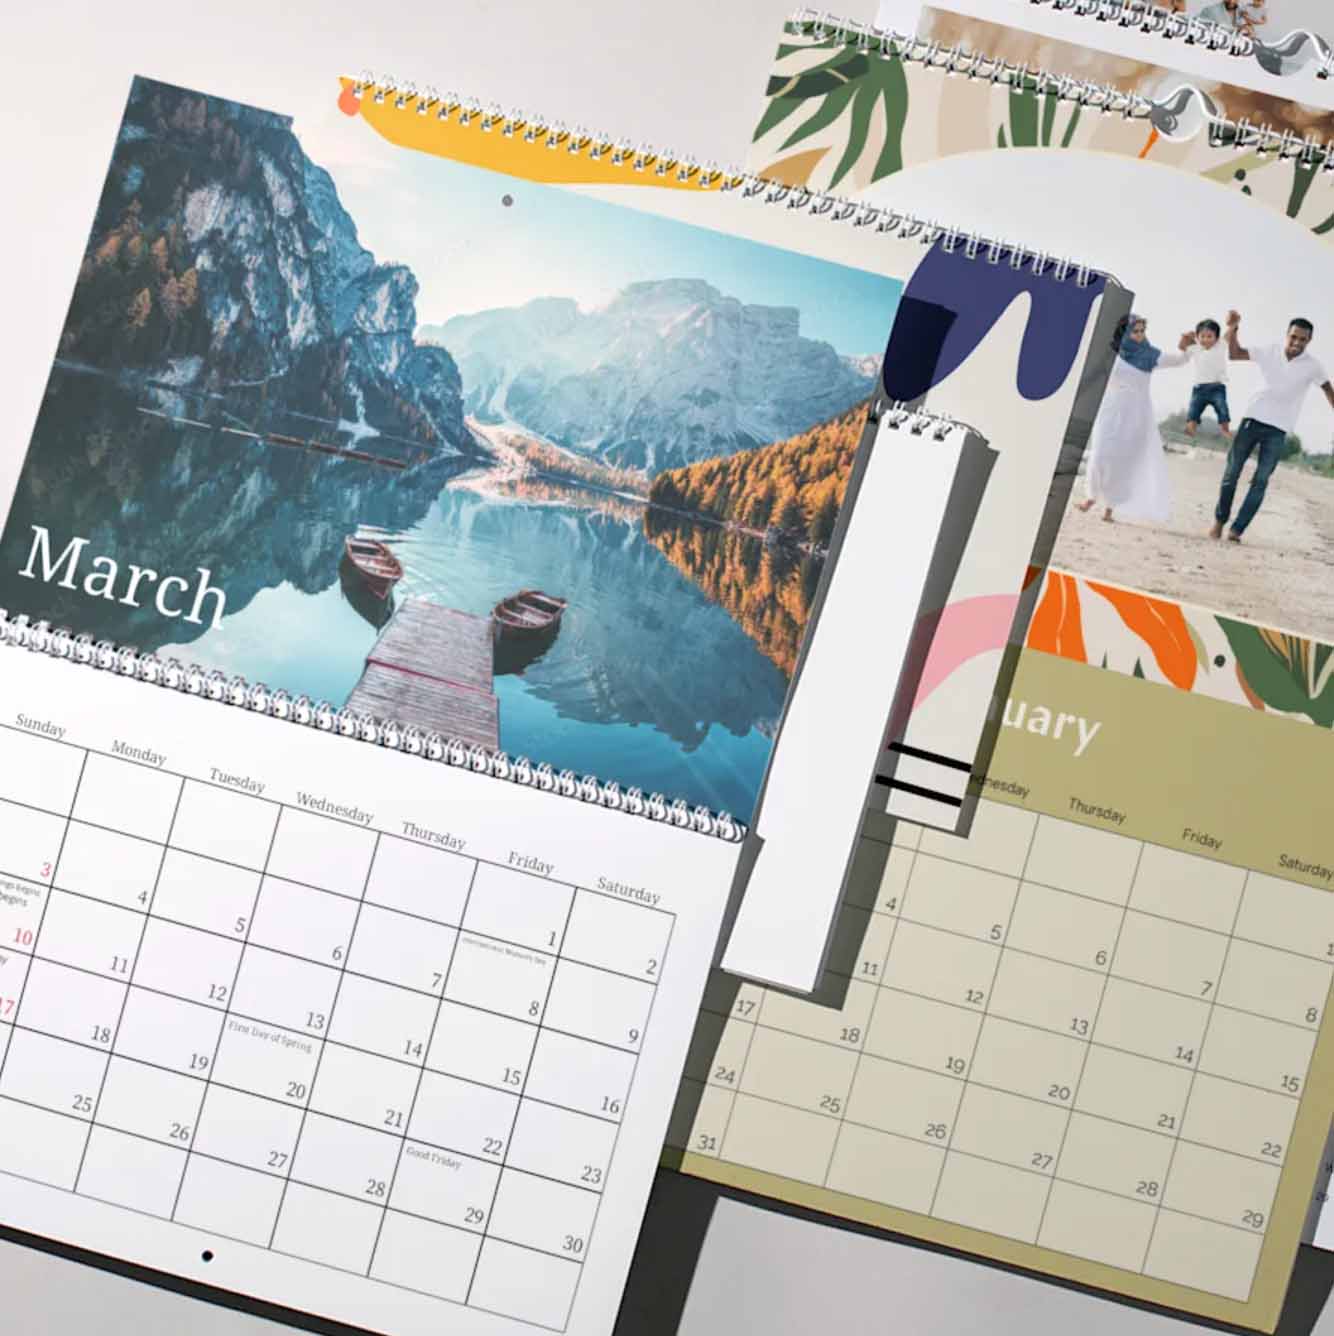 stacks of printed calendars